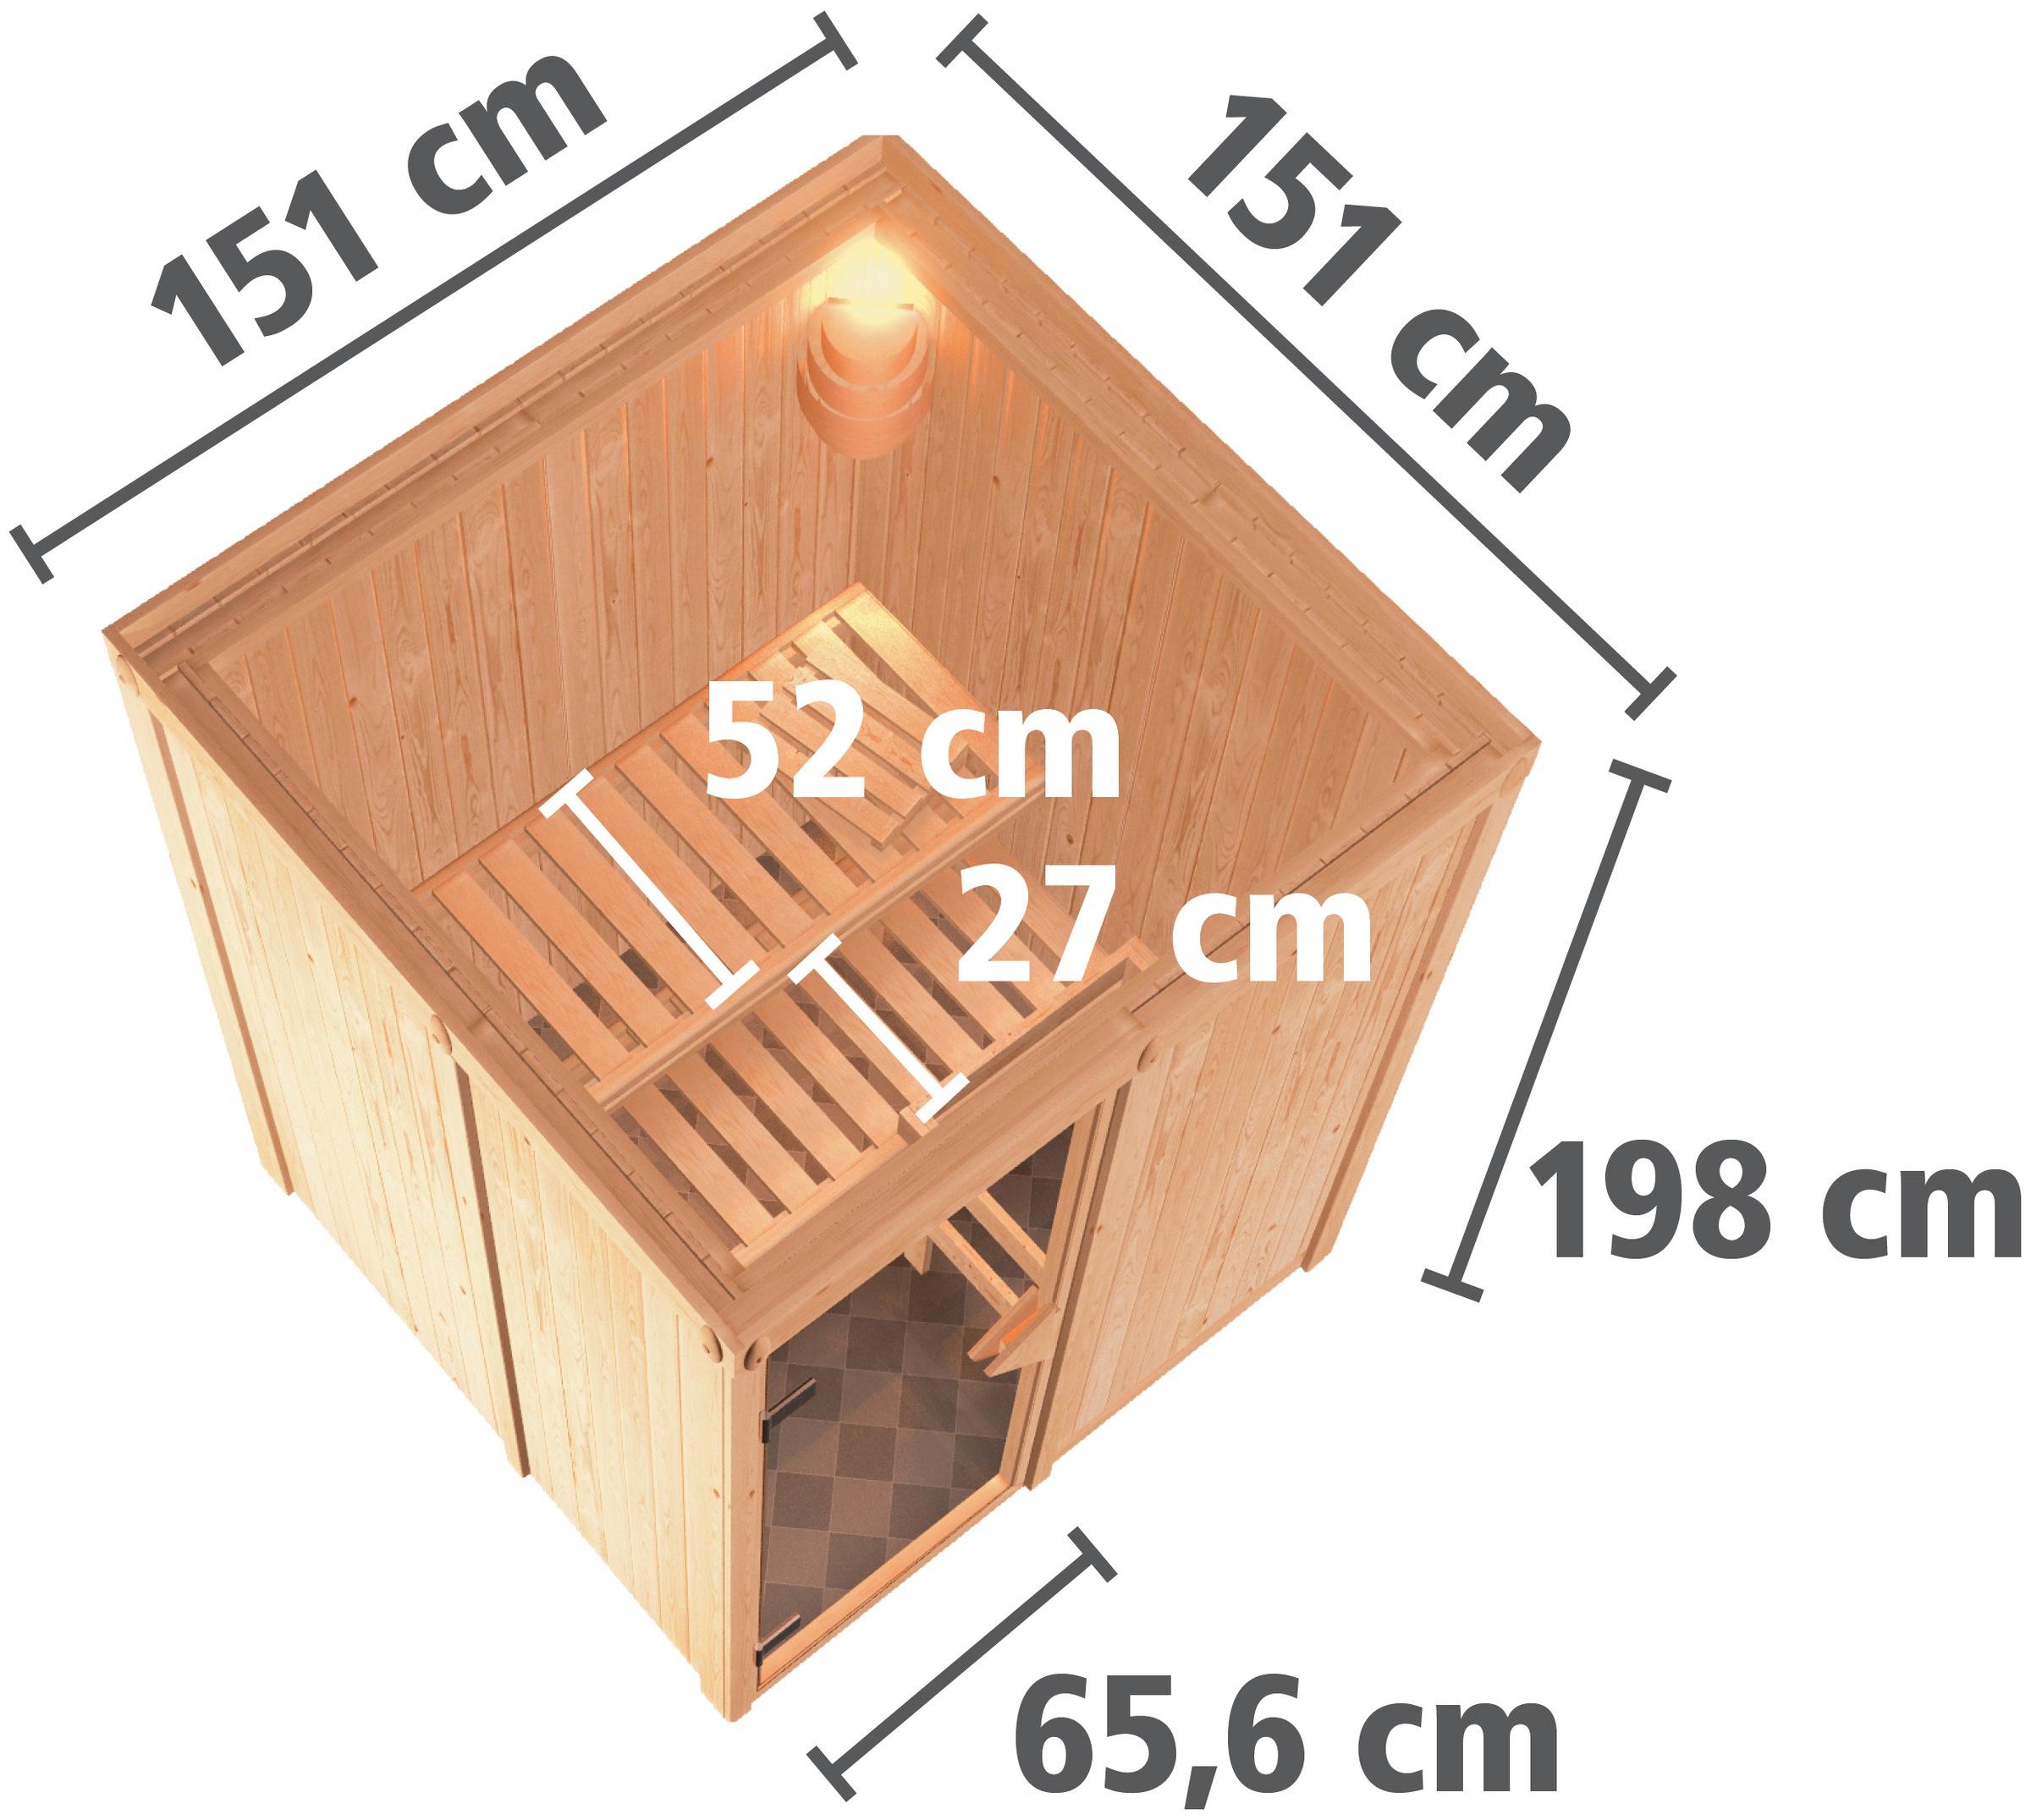 Karibu Sauna »Milaja«, (Set), 3,6-kW-Bio-Plug & Play Ofen mit externer Steuerung